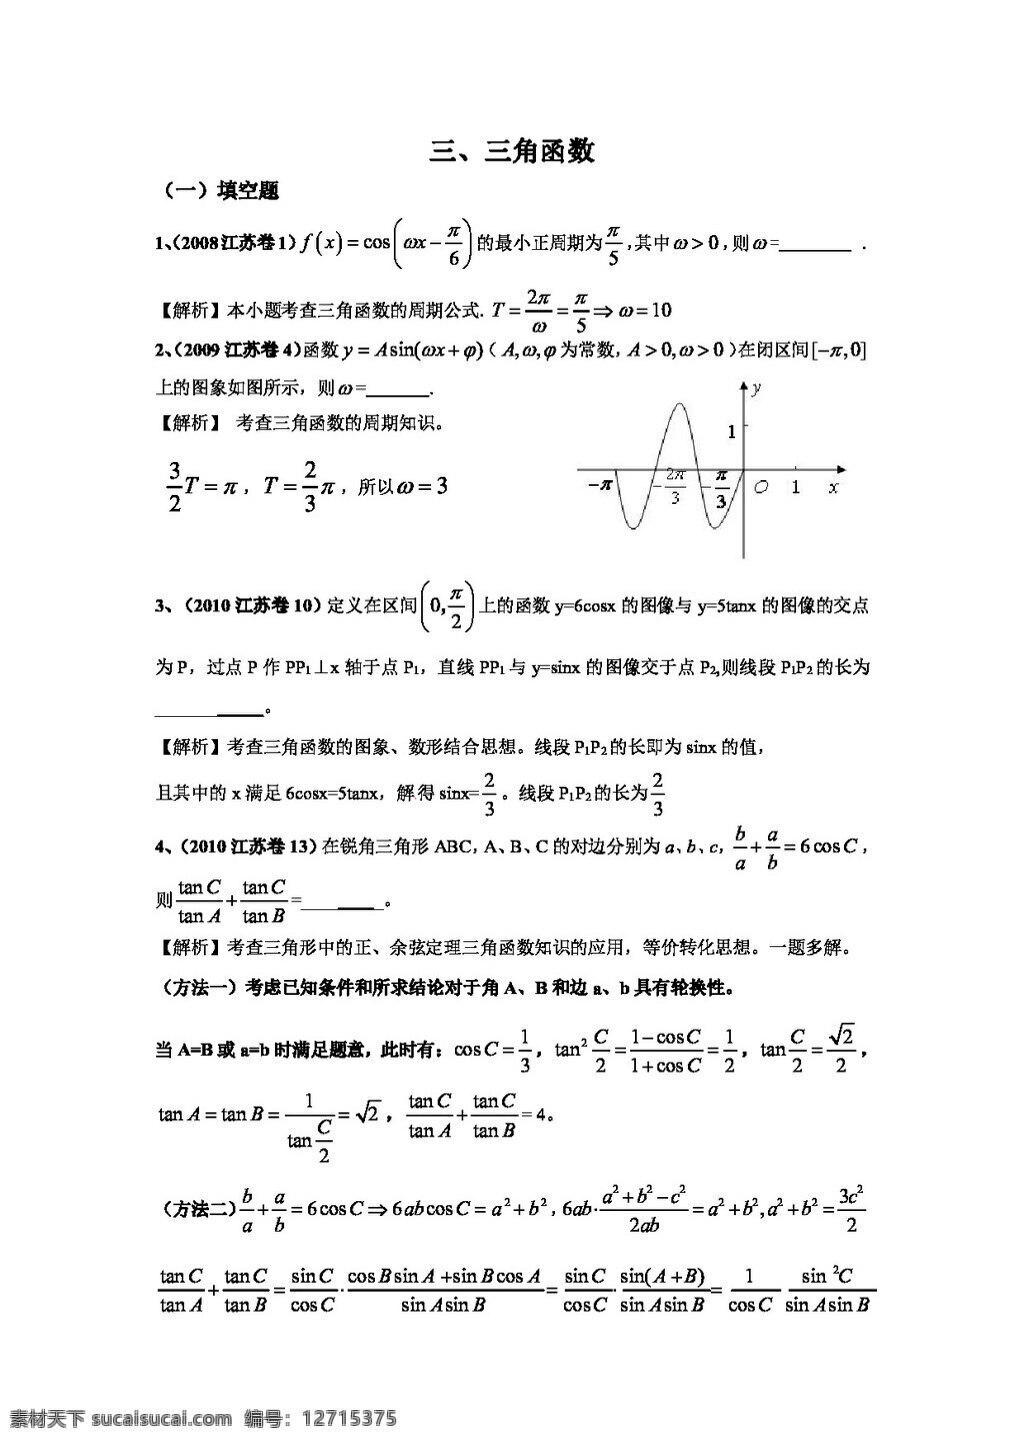 数学 人教 版 年 真题 推荐 2008 江苏 高考 分类 汇编 高考专区 人教版 试卷